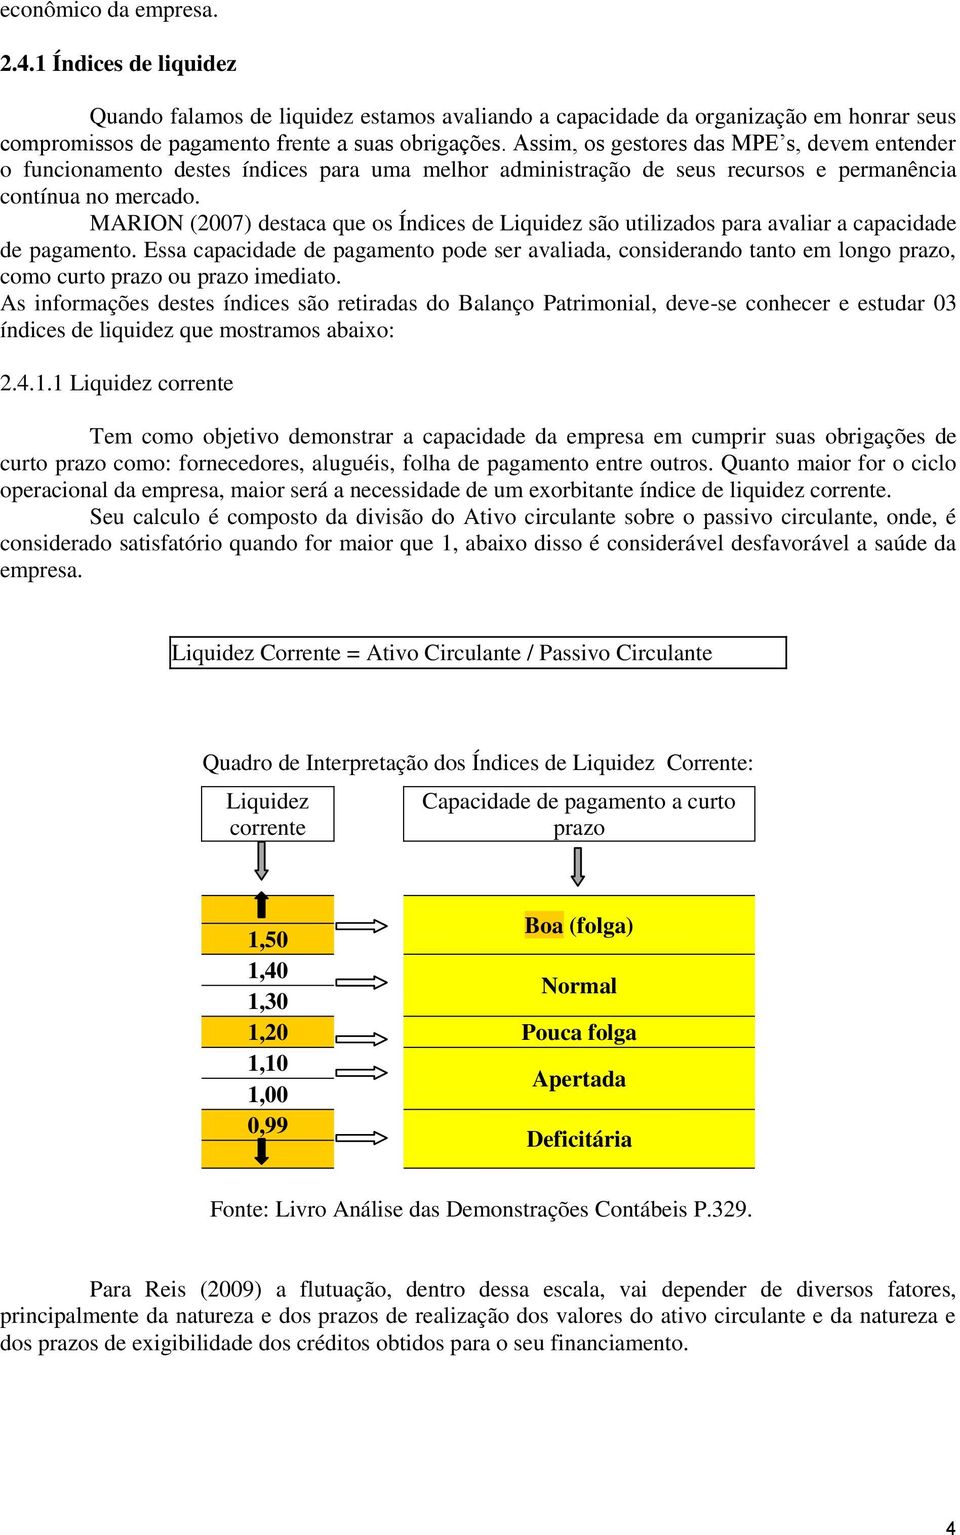 MARION (2007) destaca que os Índices de Liquidez são utilizados para avaliar a capacidade de pagamento.